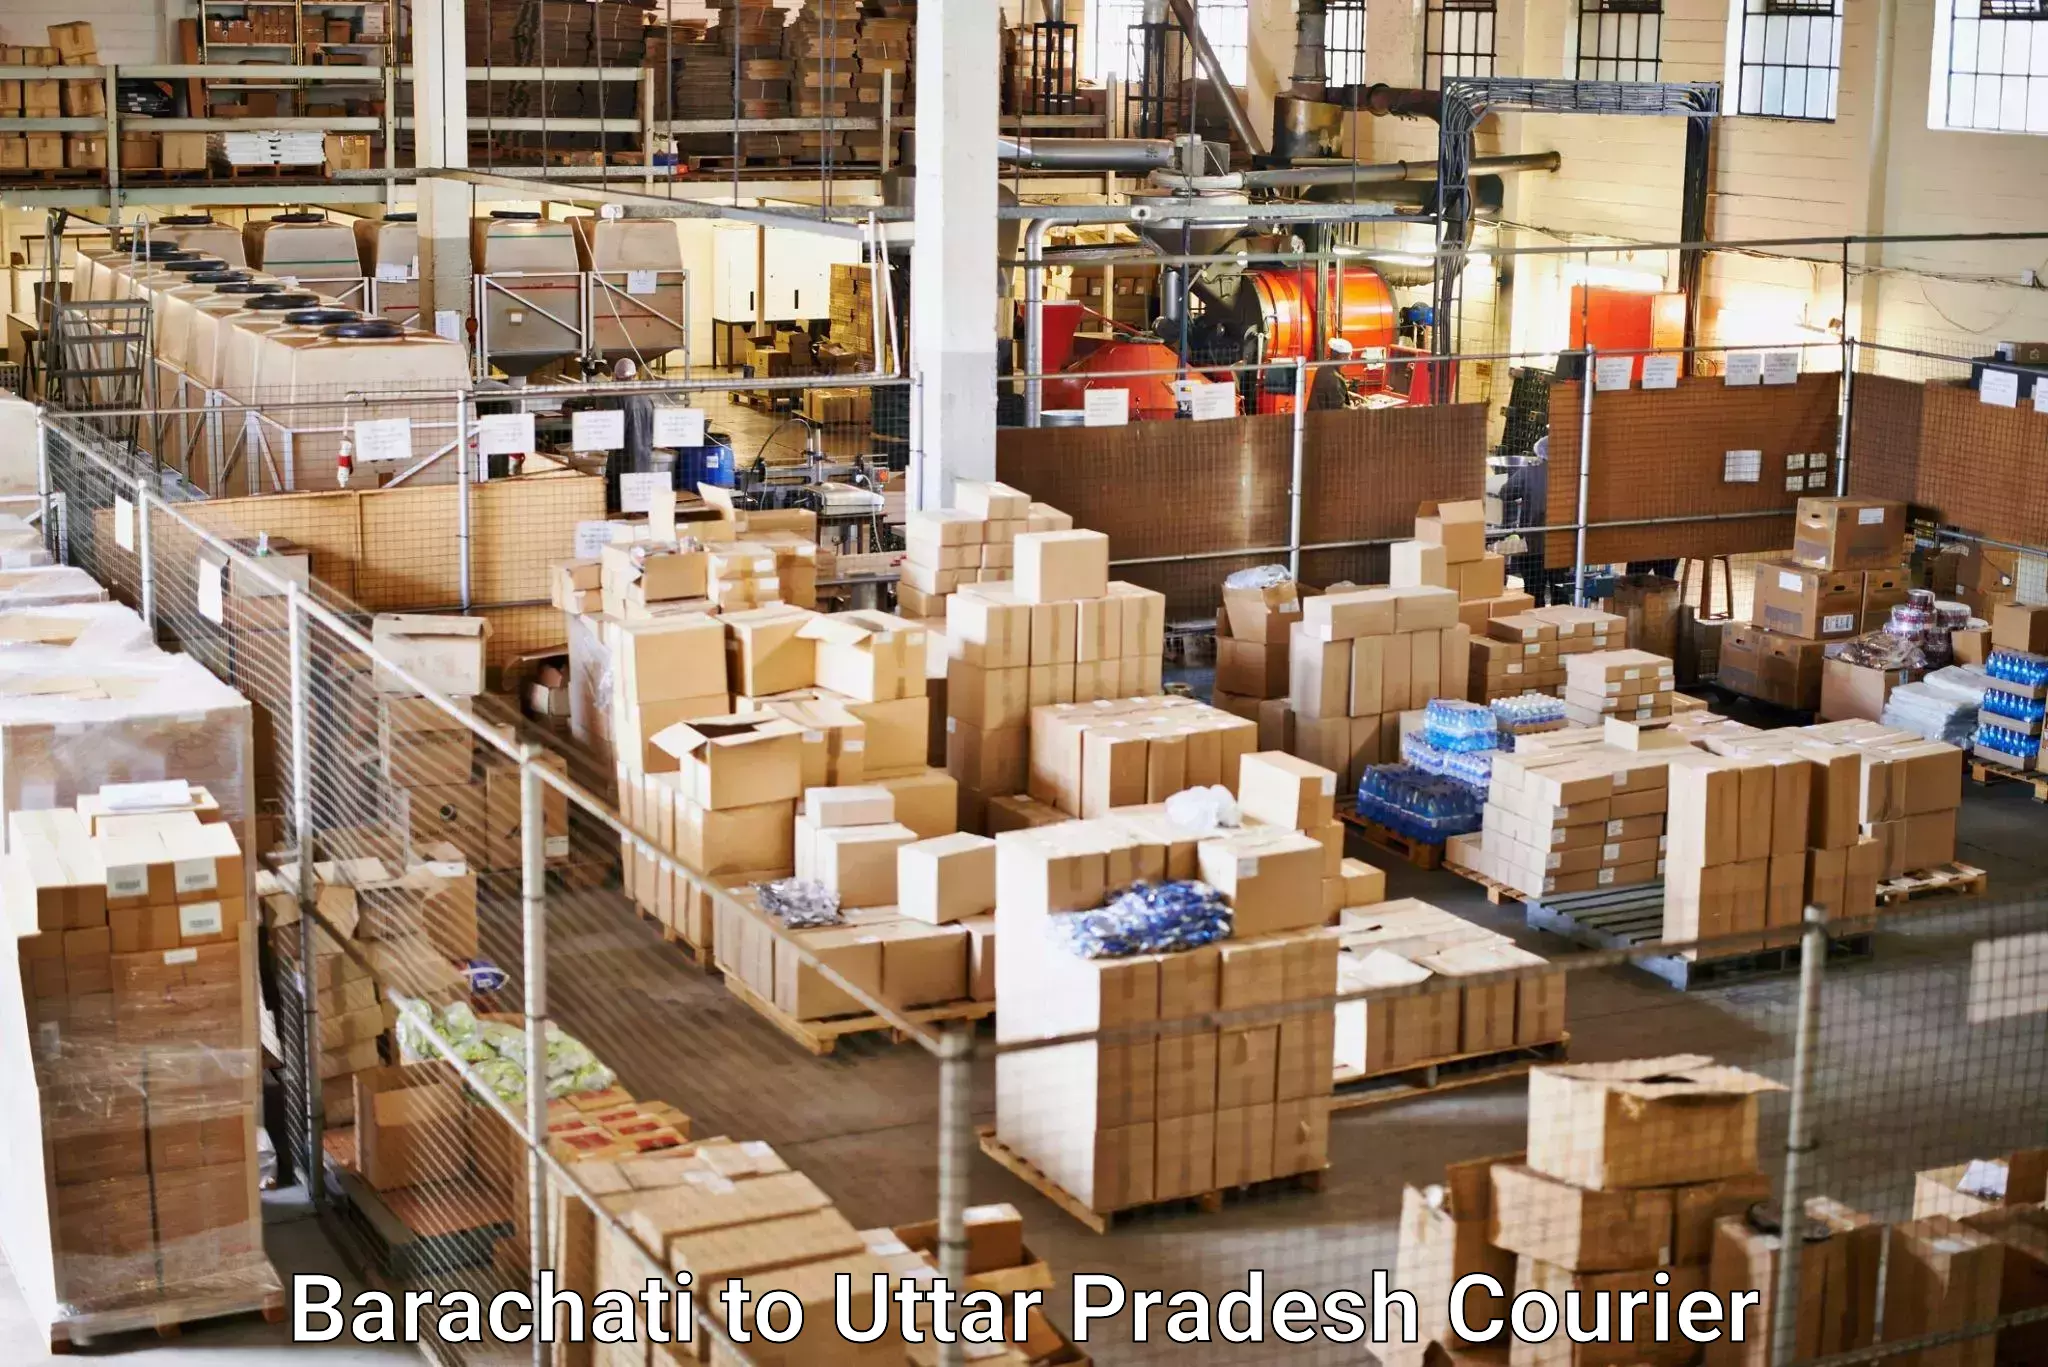 Nationwide shipping services Barachati to Varanasi